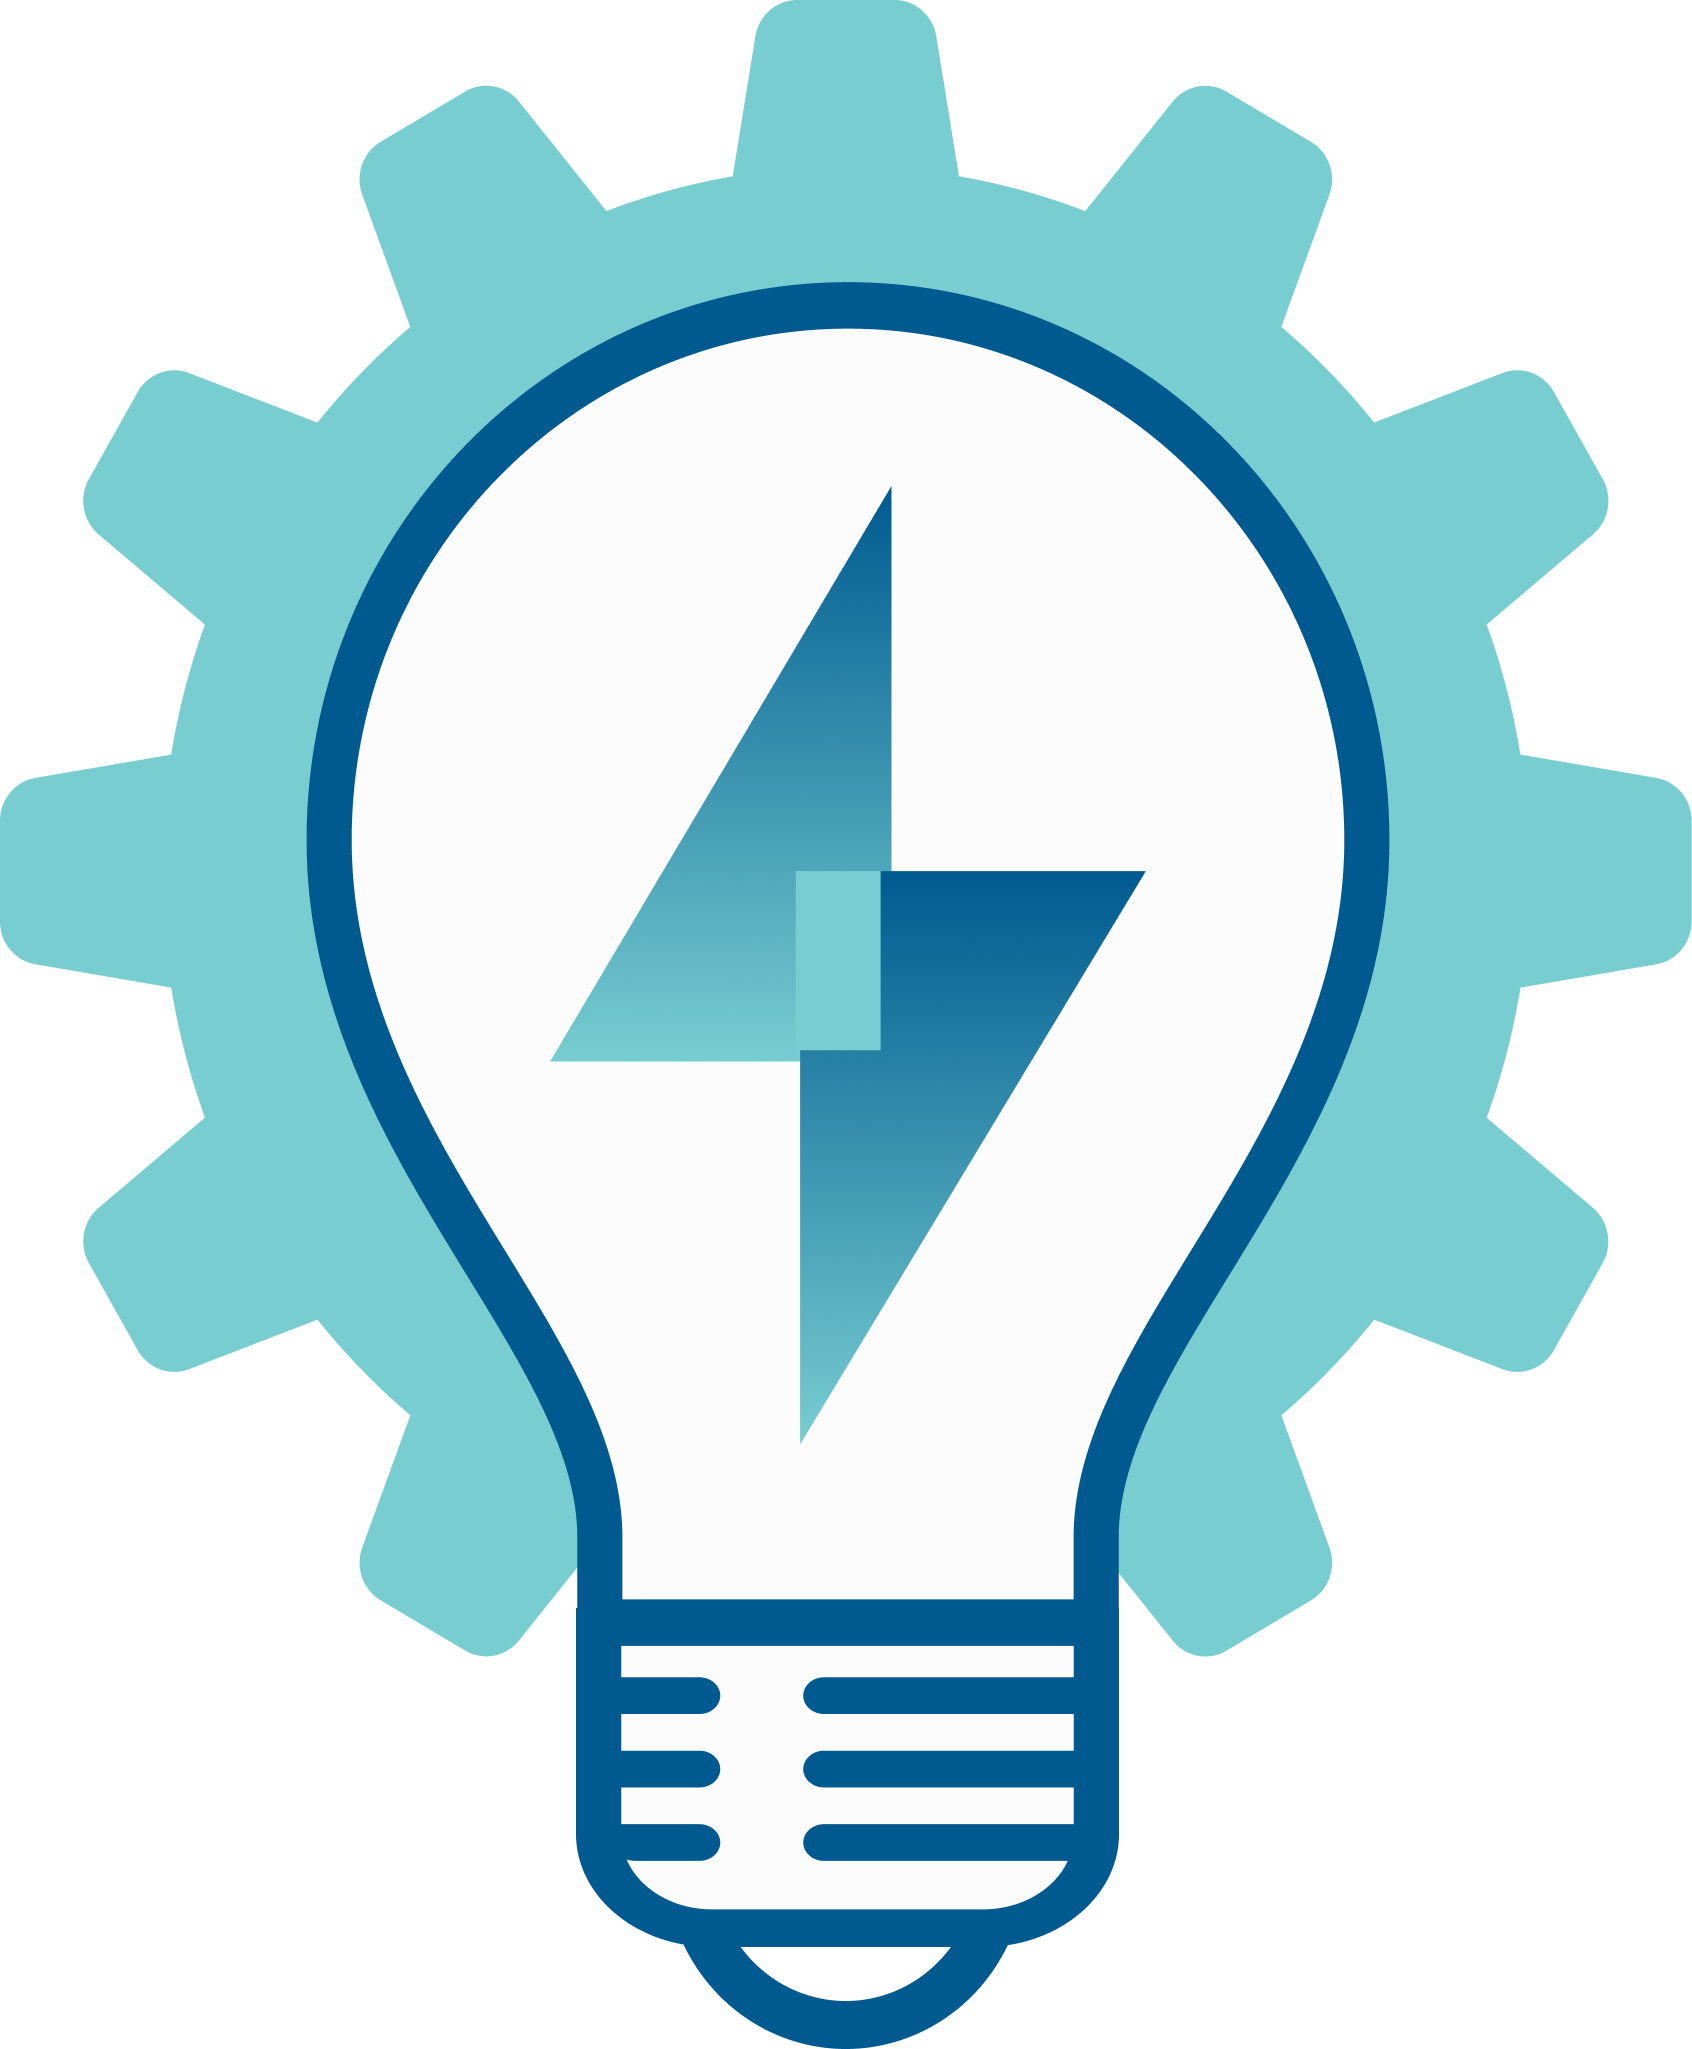 Lightbulb from power plant logo